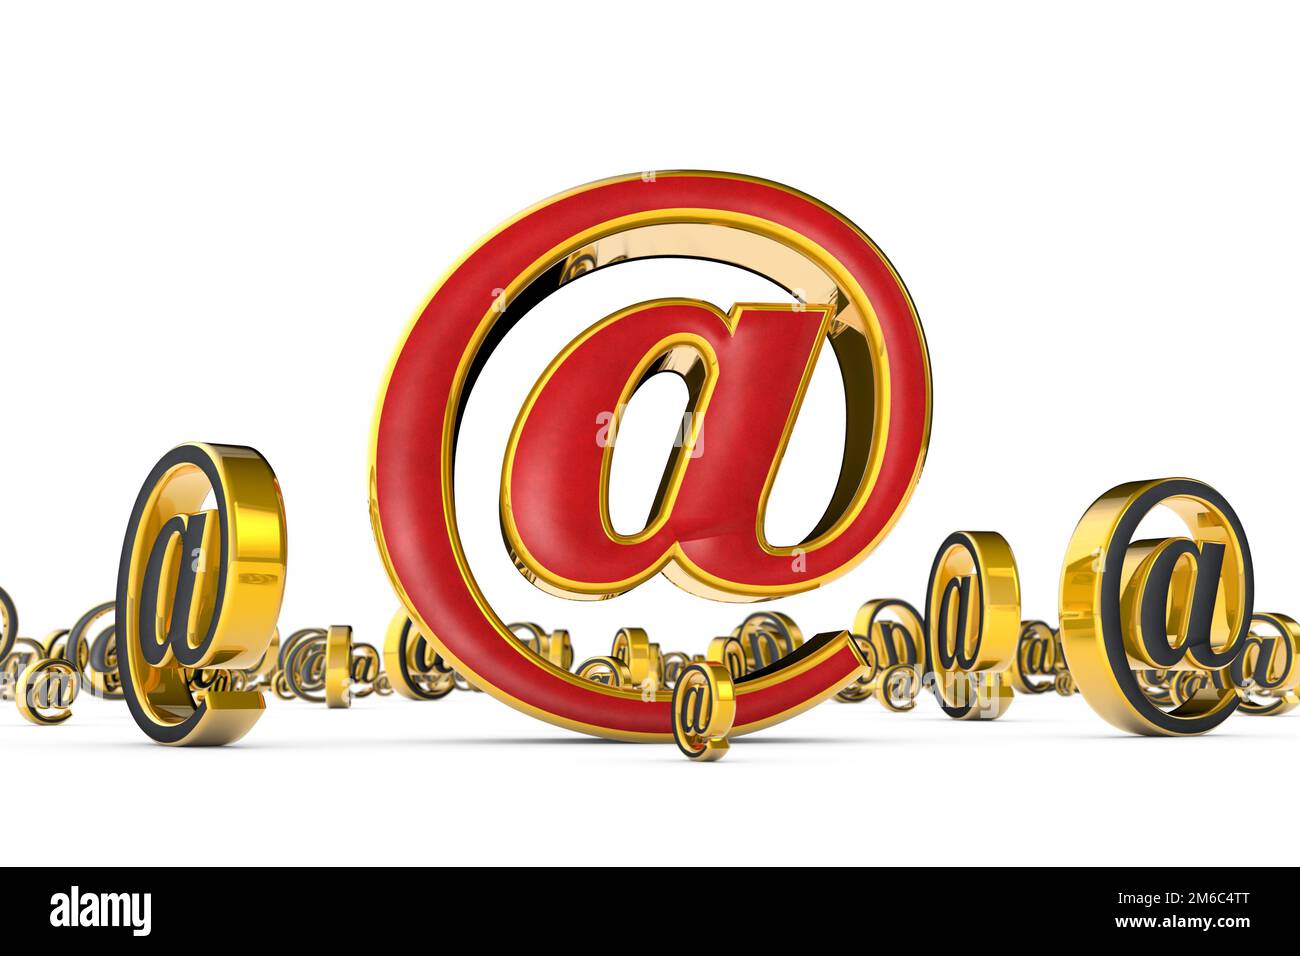 Il miglior indirizzo Internet (@). Un singolo simbolo e-mail rosso dorato circondato da molti simboli e-mail grigi dorati (figura 3D). Foto Stock